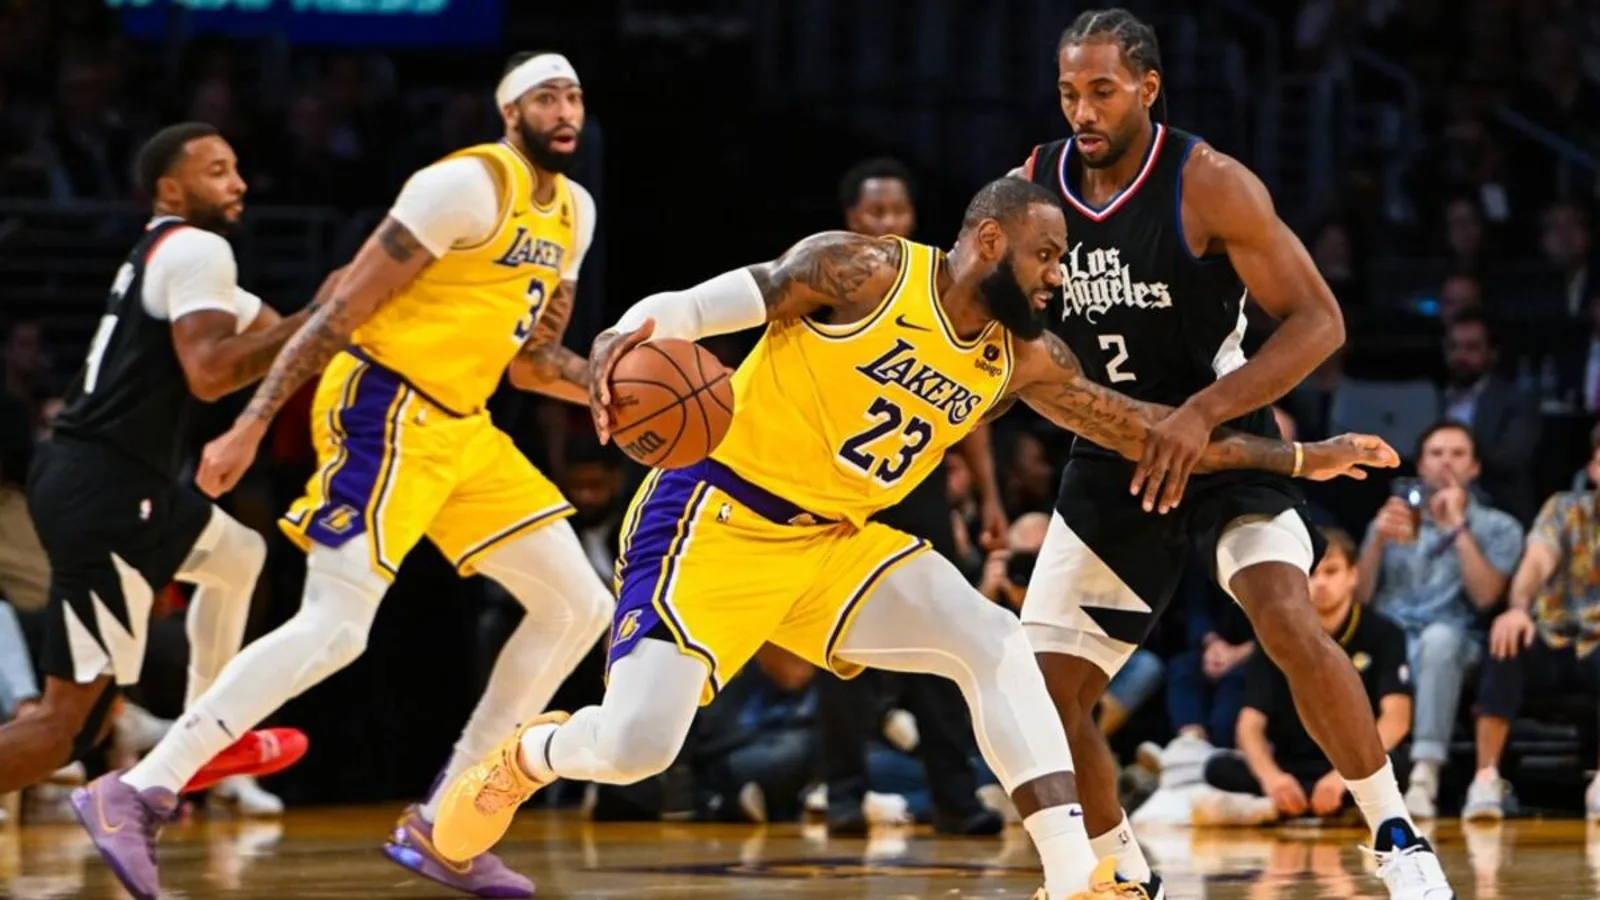 LA Lakers' Stunning Comeback Silences Critics in Battle of LA Showdown